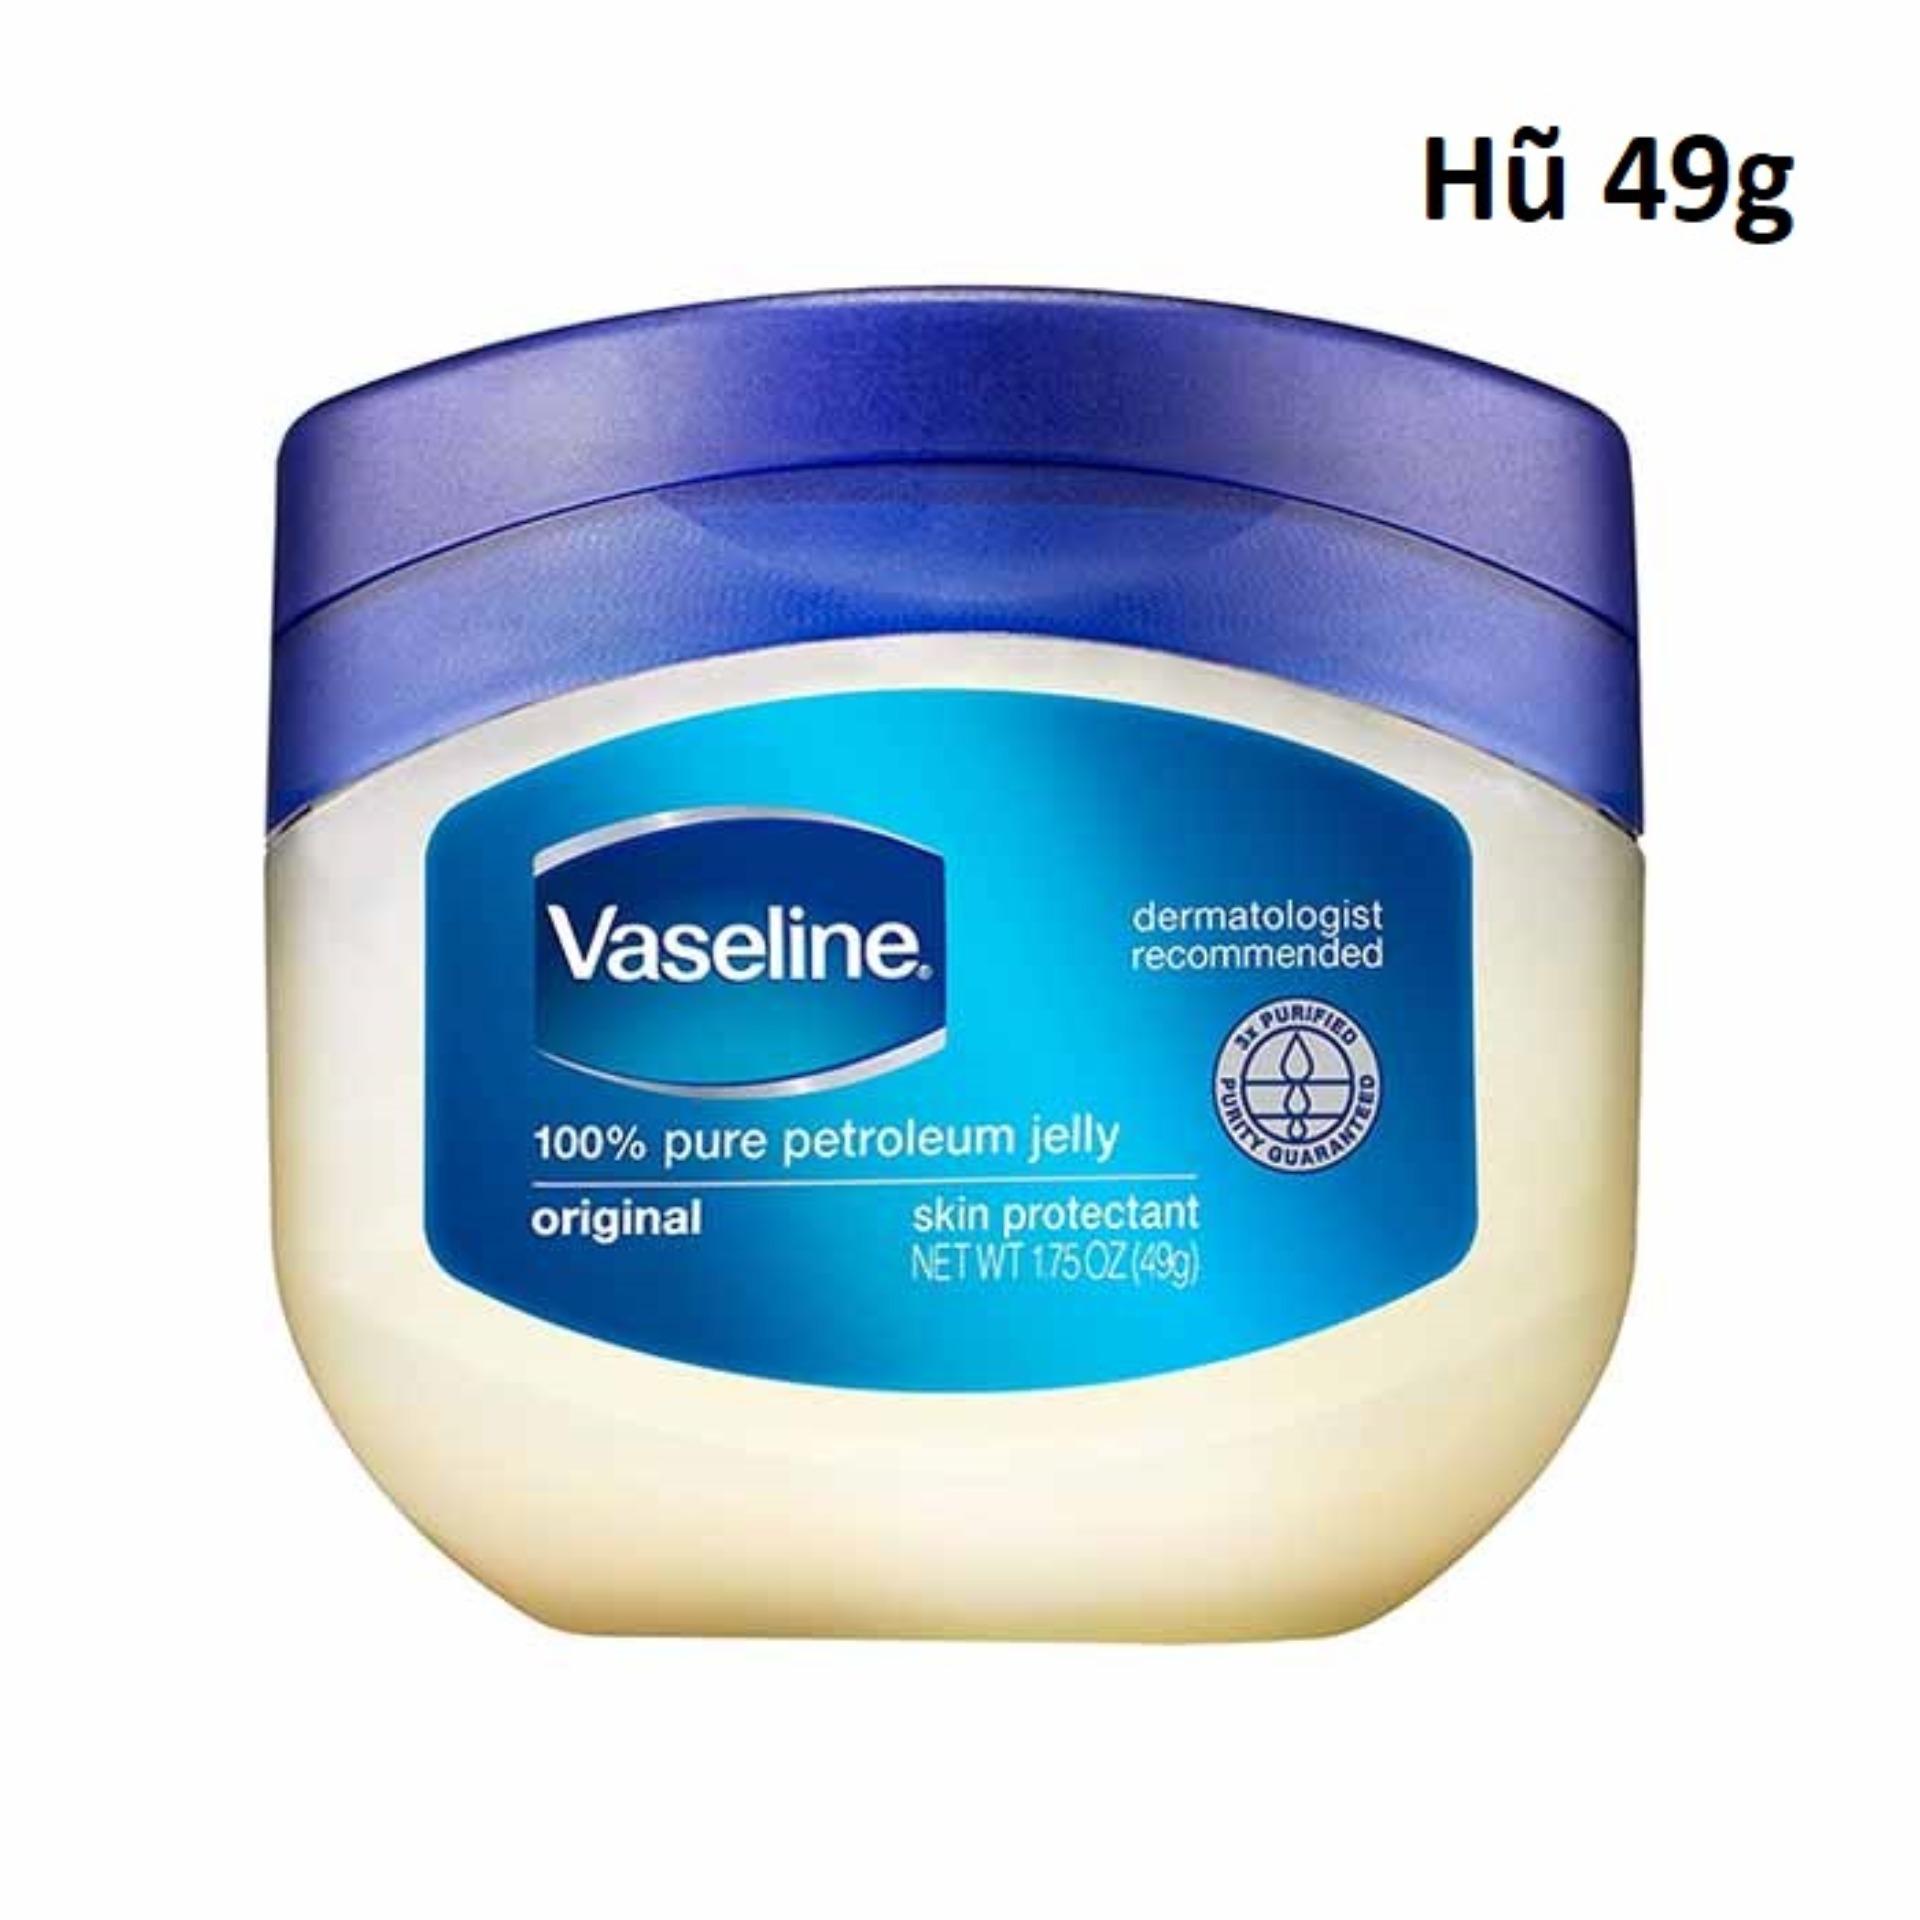 Sáp dưỡng ẩm Vaseline 49g hàng Mỹ